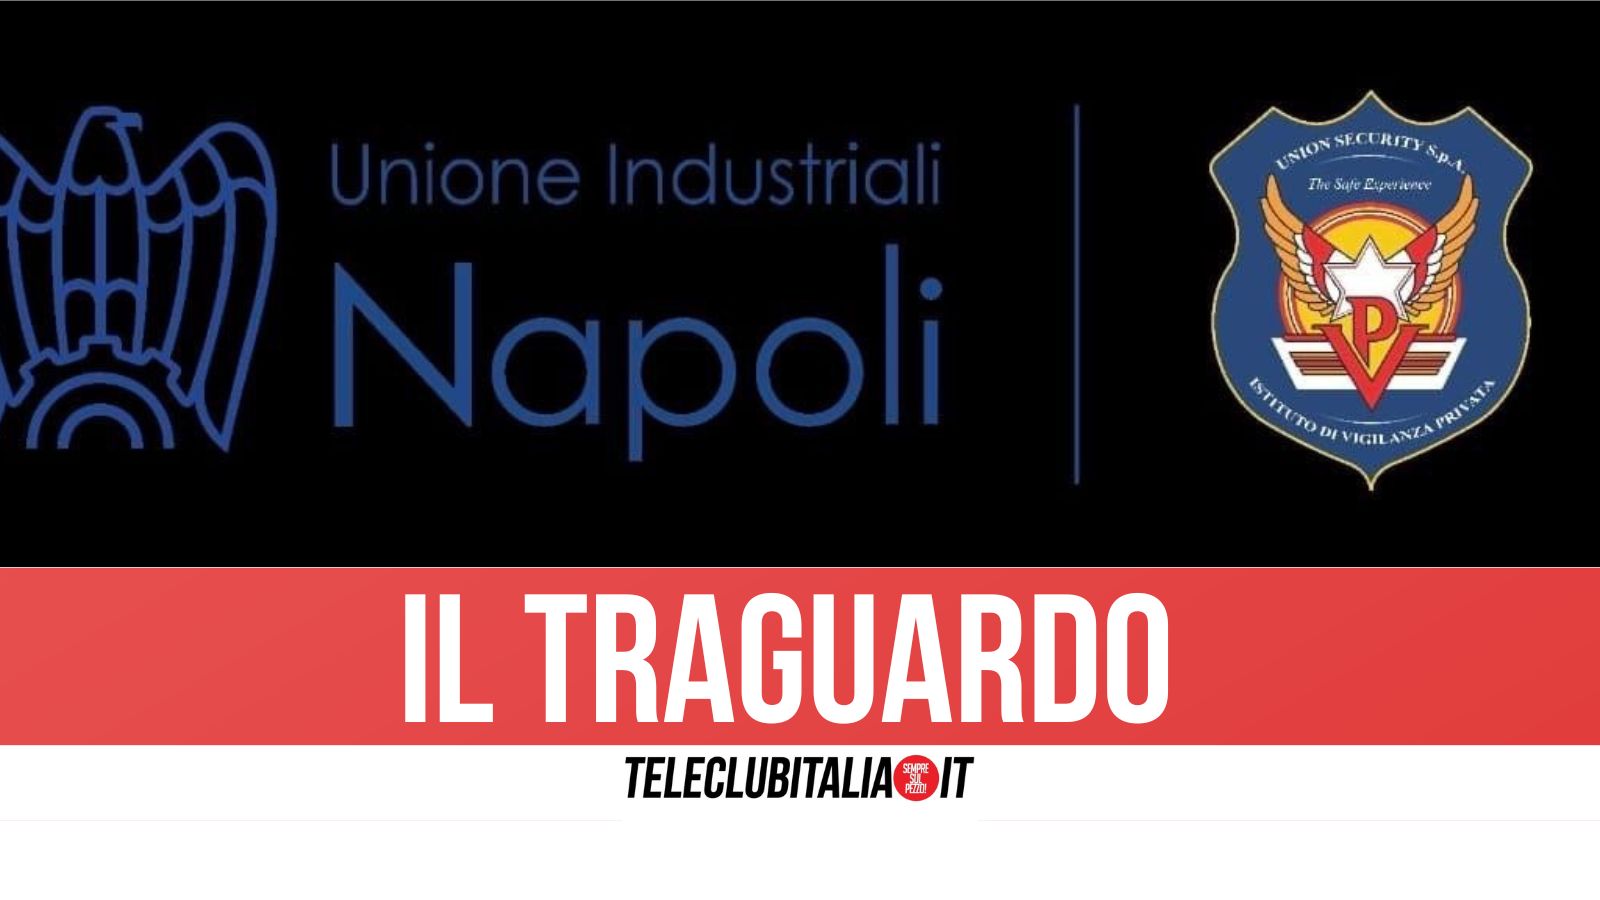 Union Security Spa entra a far parte dell’Unione Industriali Napoli